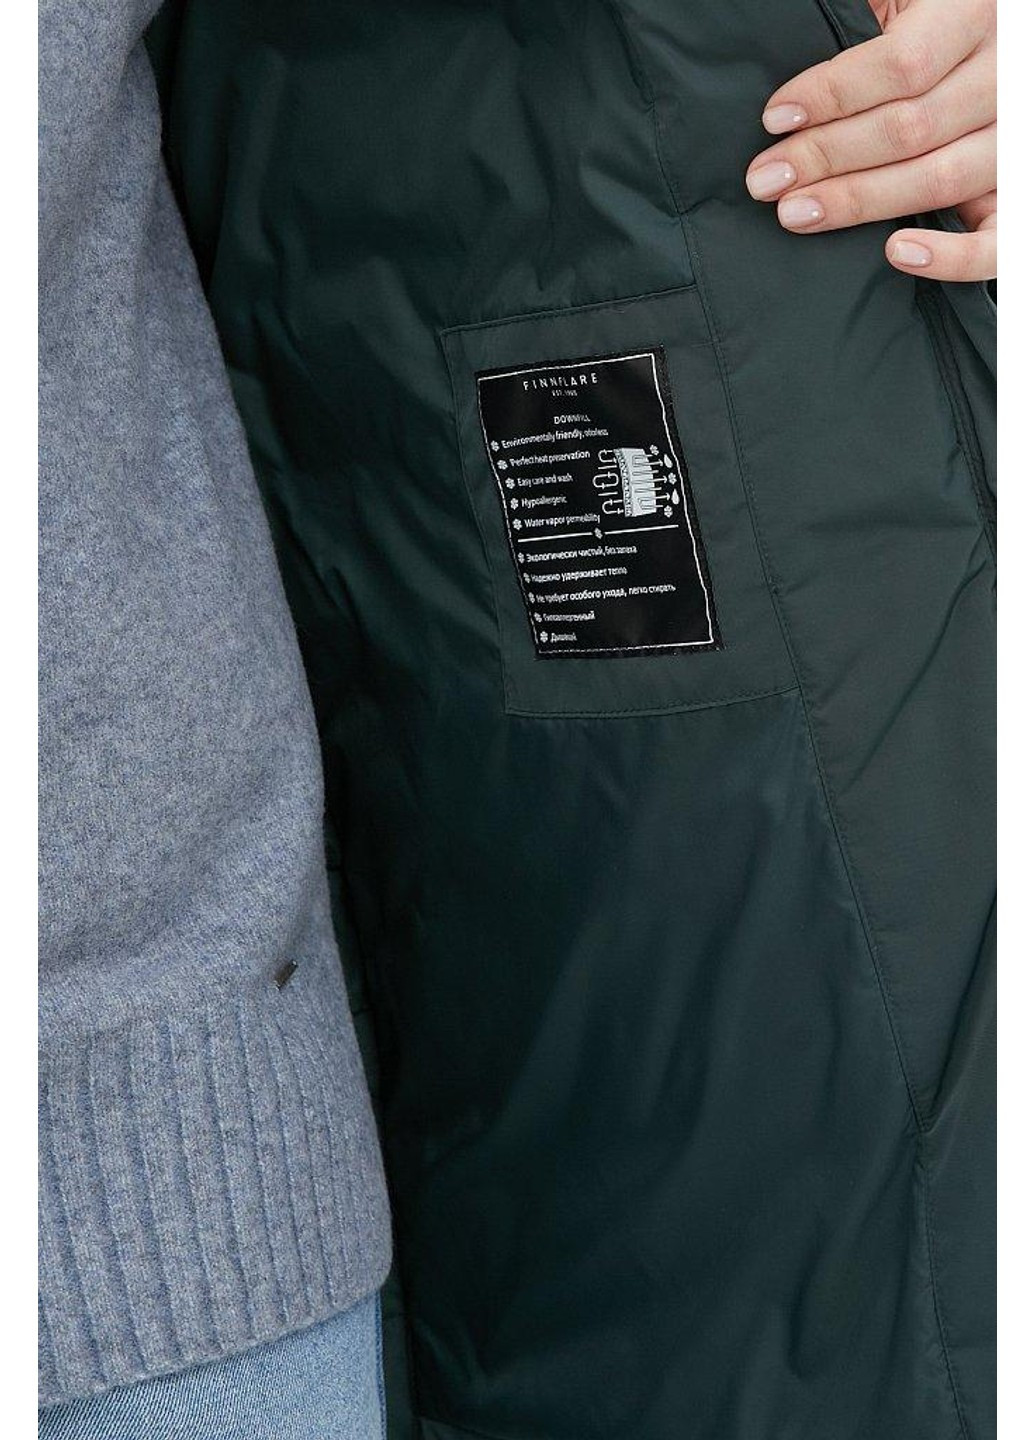 Зеленая зимняя куртка fwb160133-530 Finn Flare